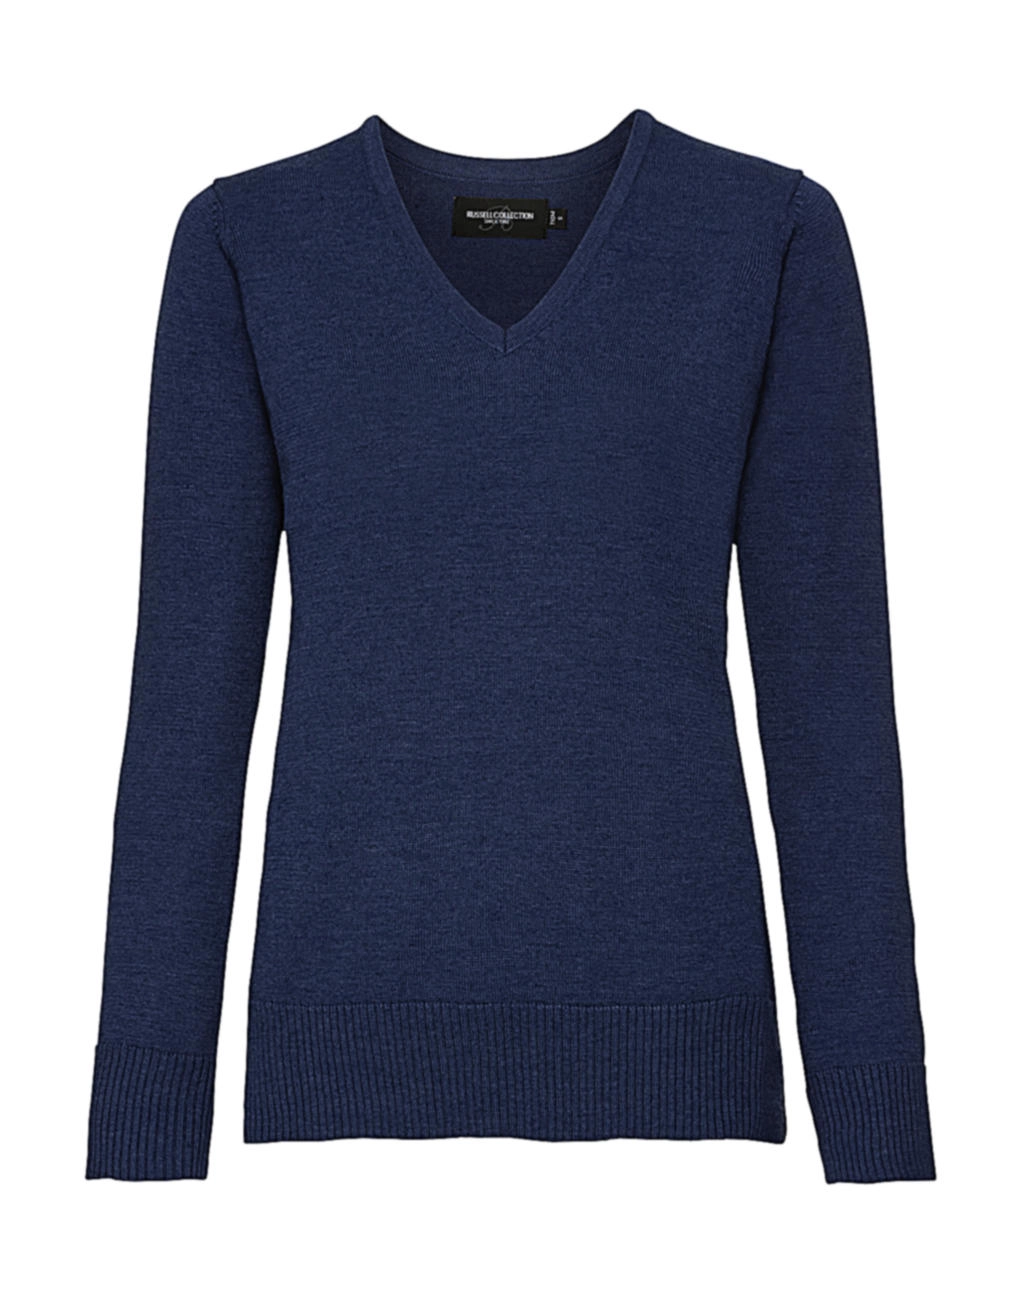 Ladies’ V-Neck Knitted Pullover zum Besticken und Bedrucken in der Farbe Denim Marl mit Ihren Logo, Schriftzug oder Motiv.